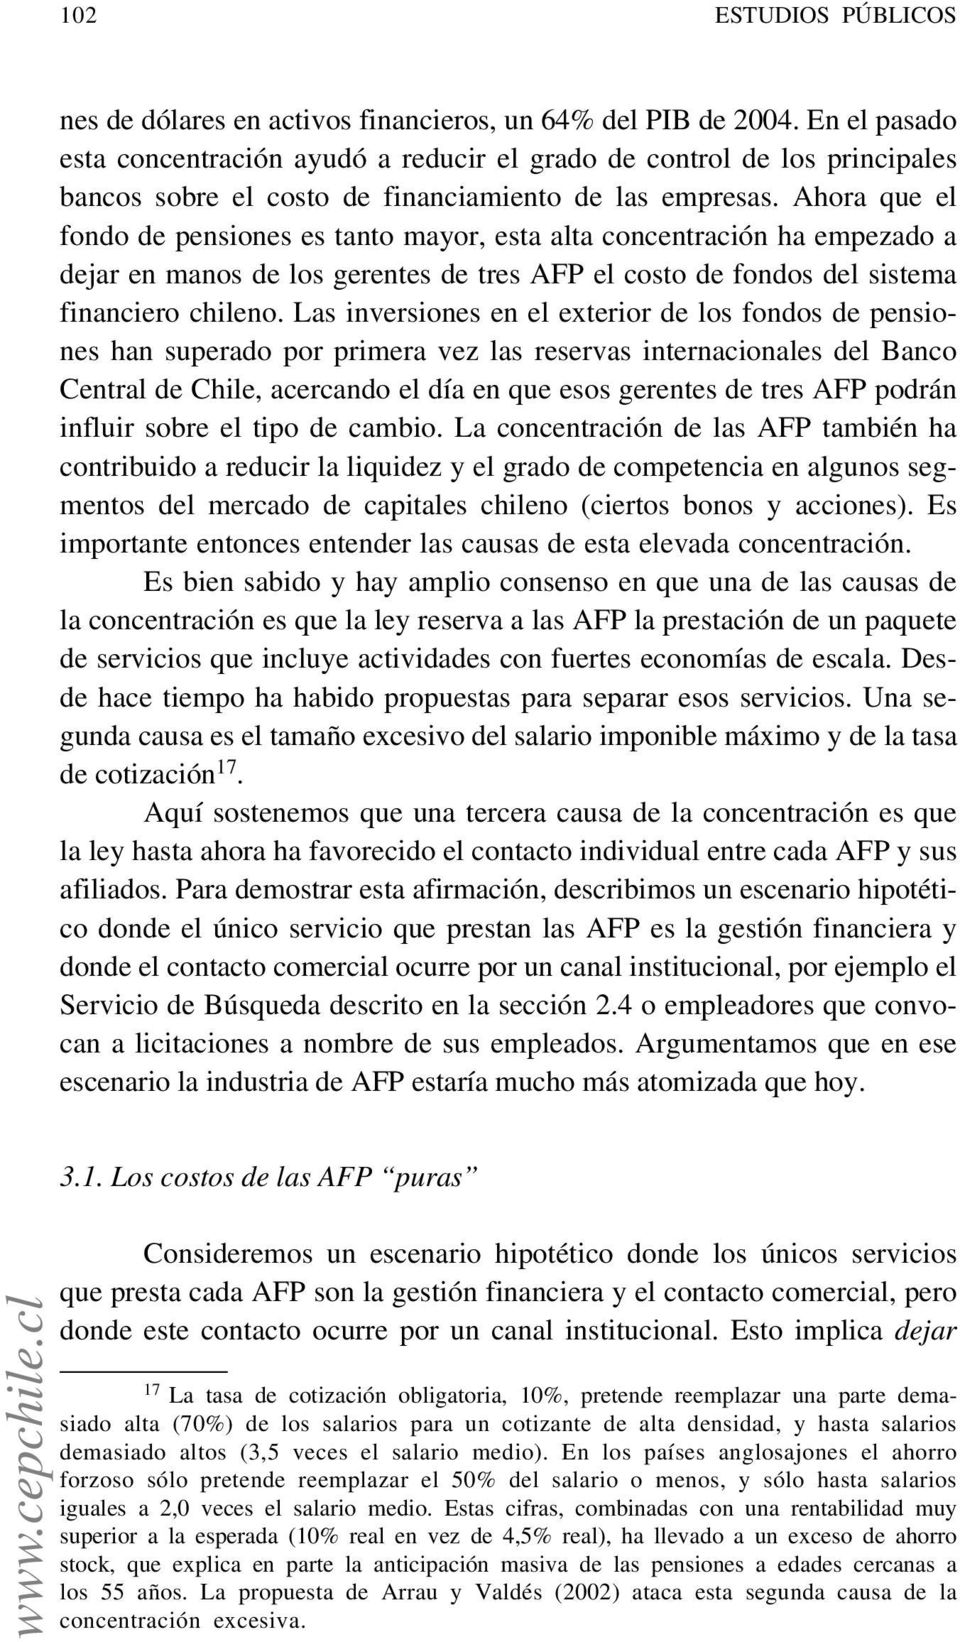 Ahora que el fondo de pensiones es tanto mayor, esta alta concentración ha empezado a dejar en manos de los gerentes de tres AFP el costo de fondos del sistema financiero chileno.